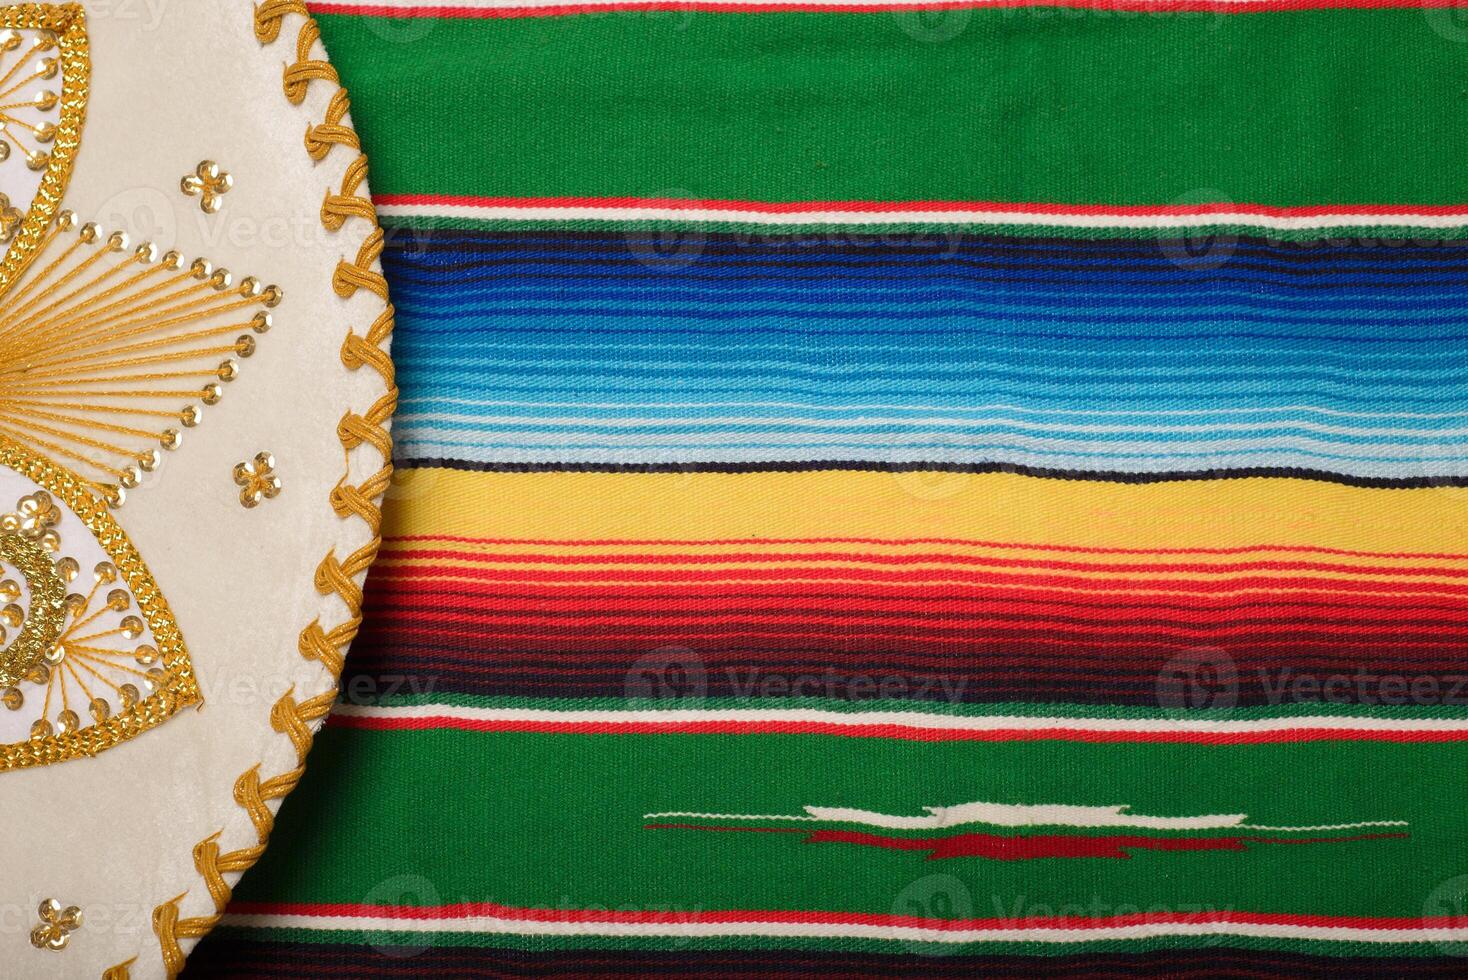 Mariachi hat on colorful serape. Mexican sombrero. Cinco de mayo background. photo